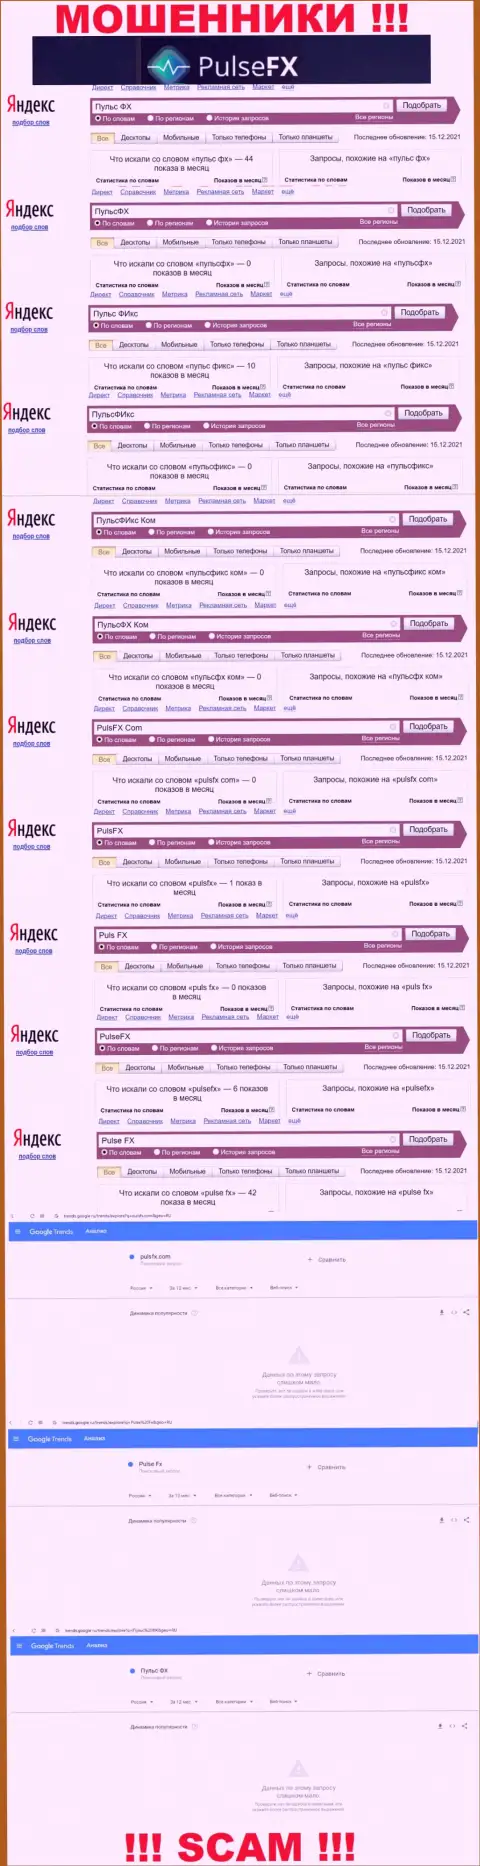 Количество онлайн-запросов в интернет сети по бренду мошенников PulsFX